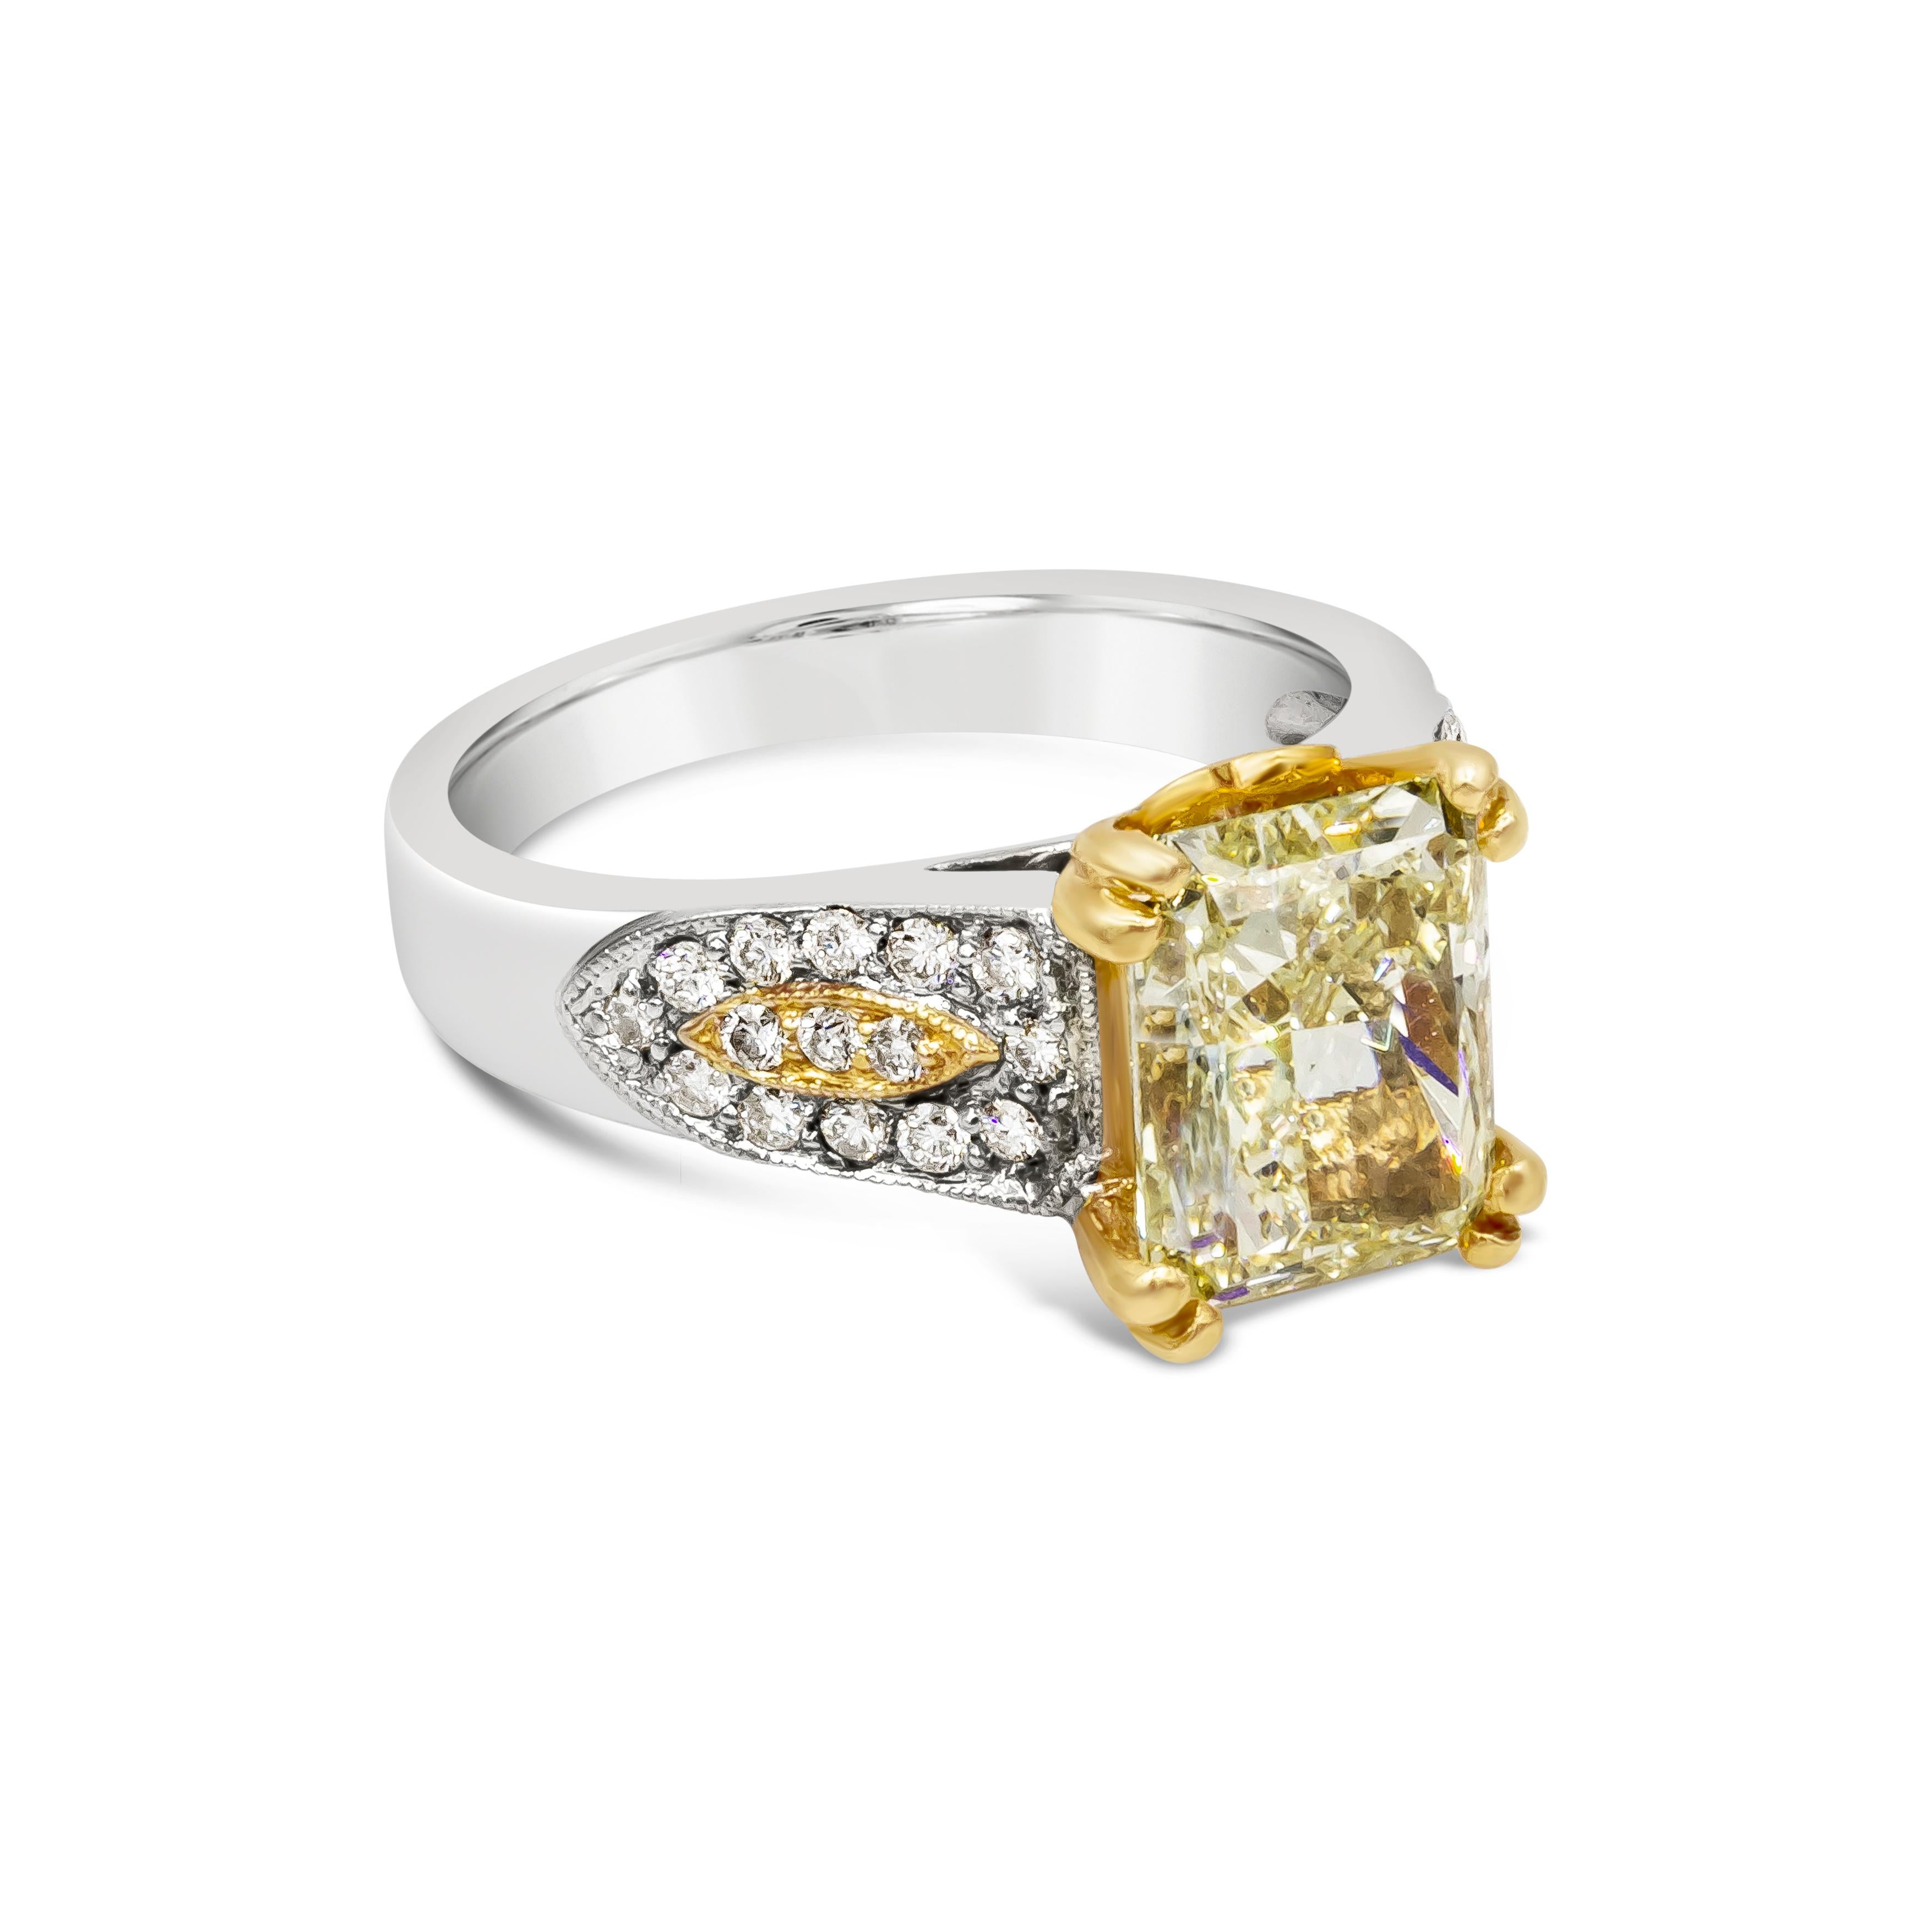 Seltener und farbenprächtiger Verlobungsring mit einem strahlenden, länglichen Diamanten von 3,87 Karat, der von GIA als 